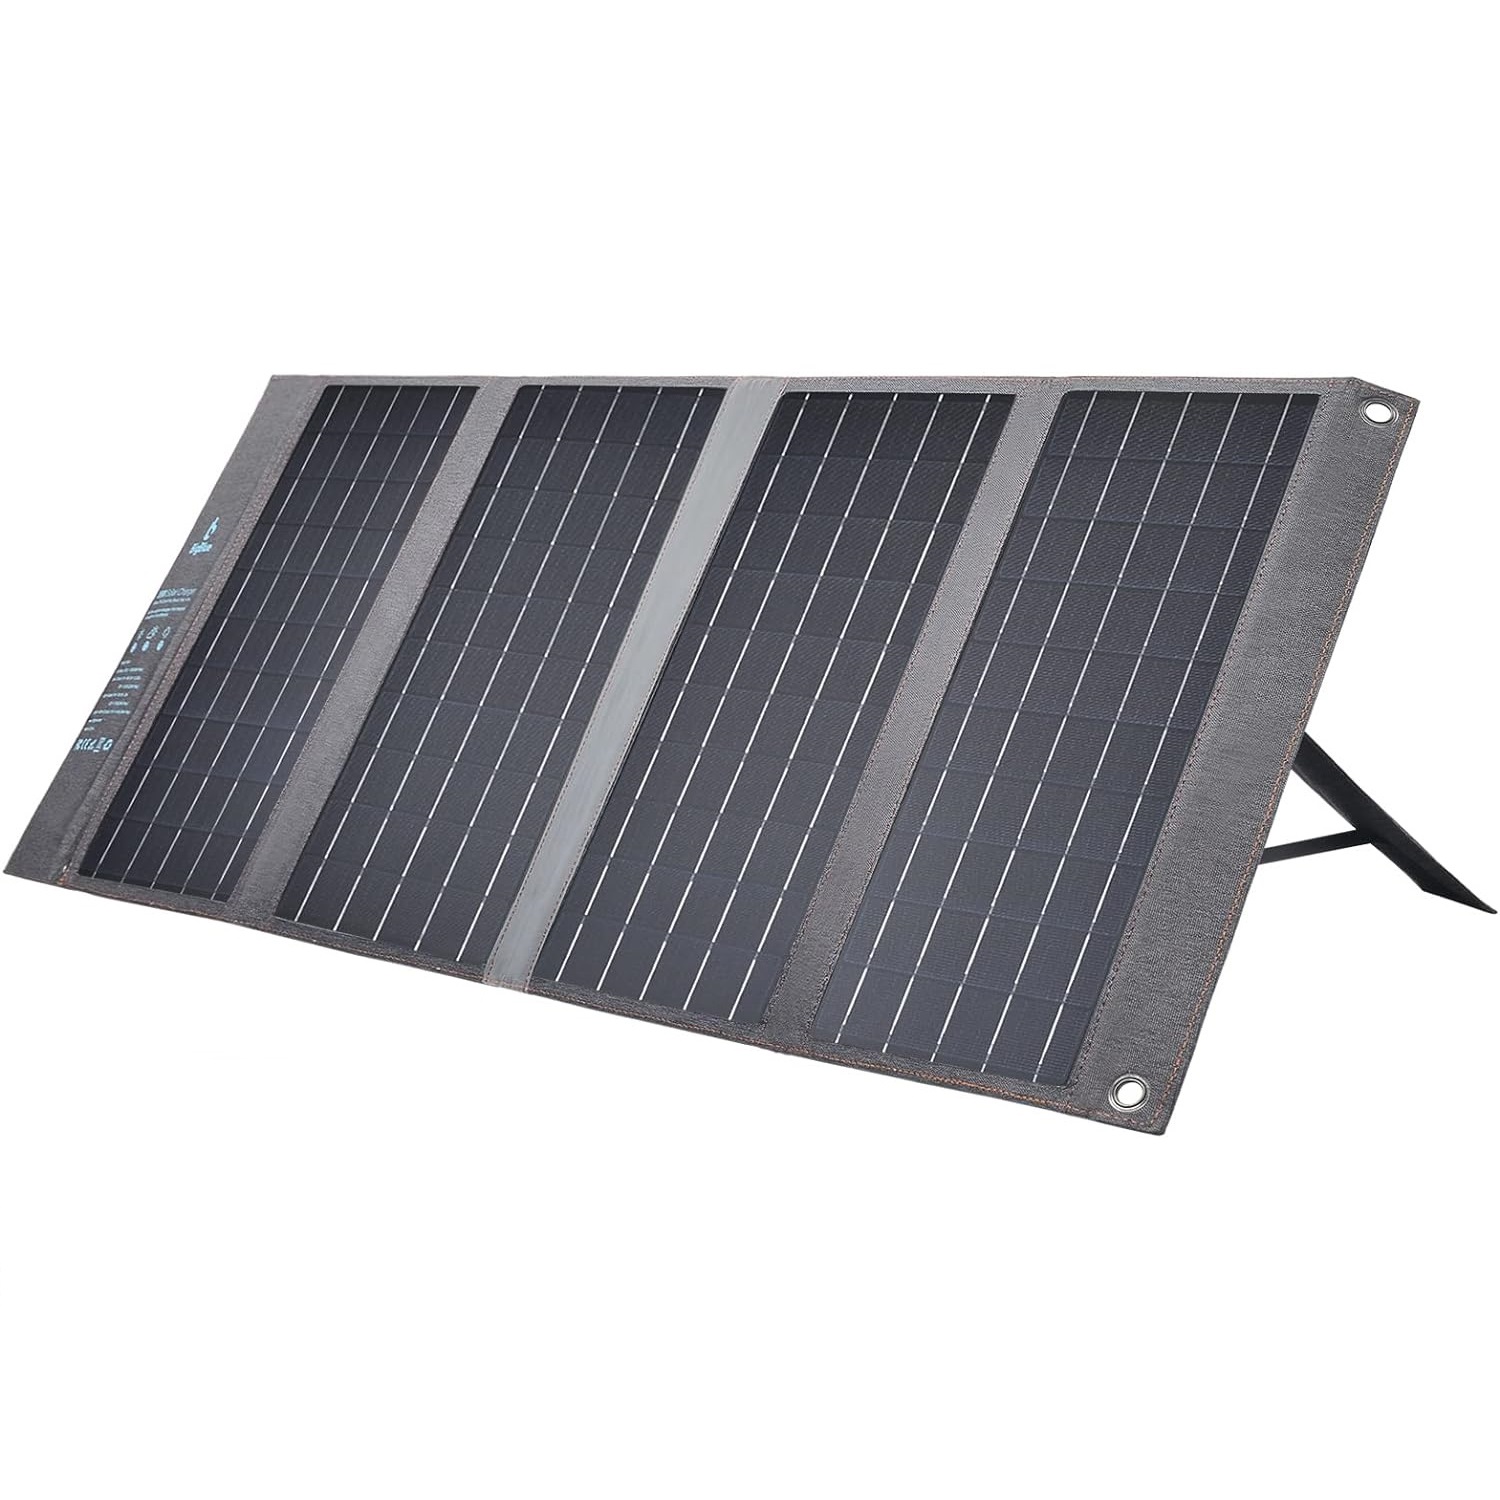 نکته خرید - قیمت روز پنل خورشیدی بیگ بلو مدل B450 ظرفیت 36 ولت خرید